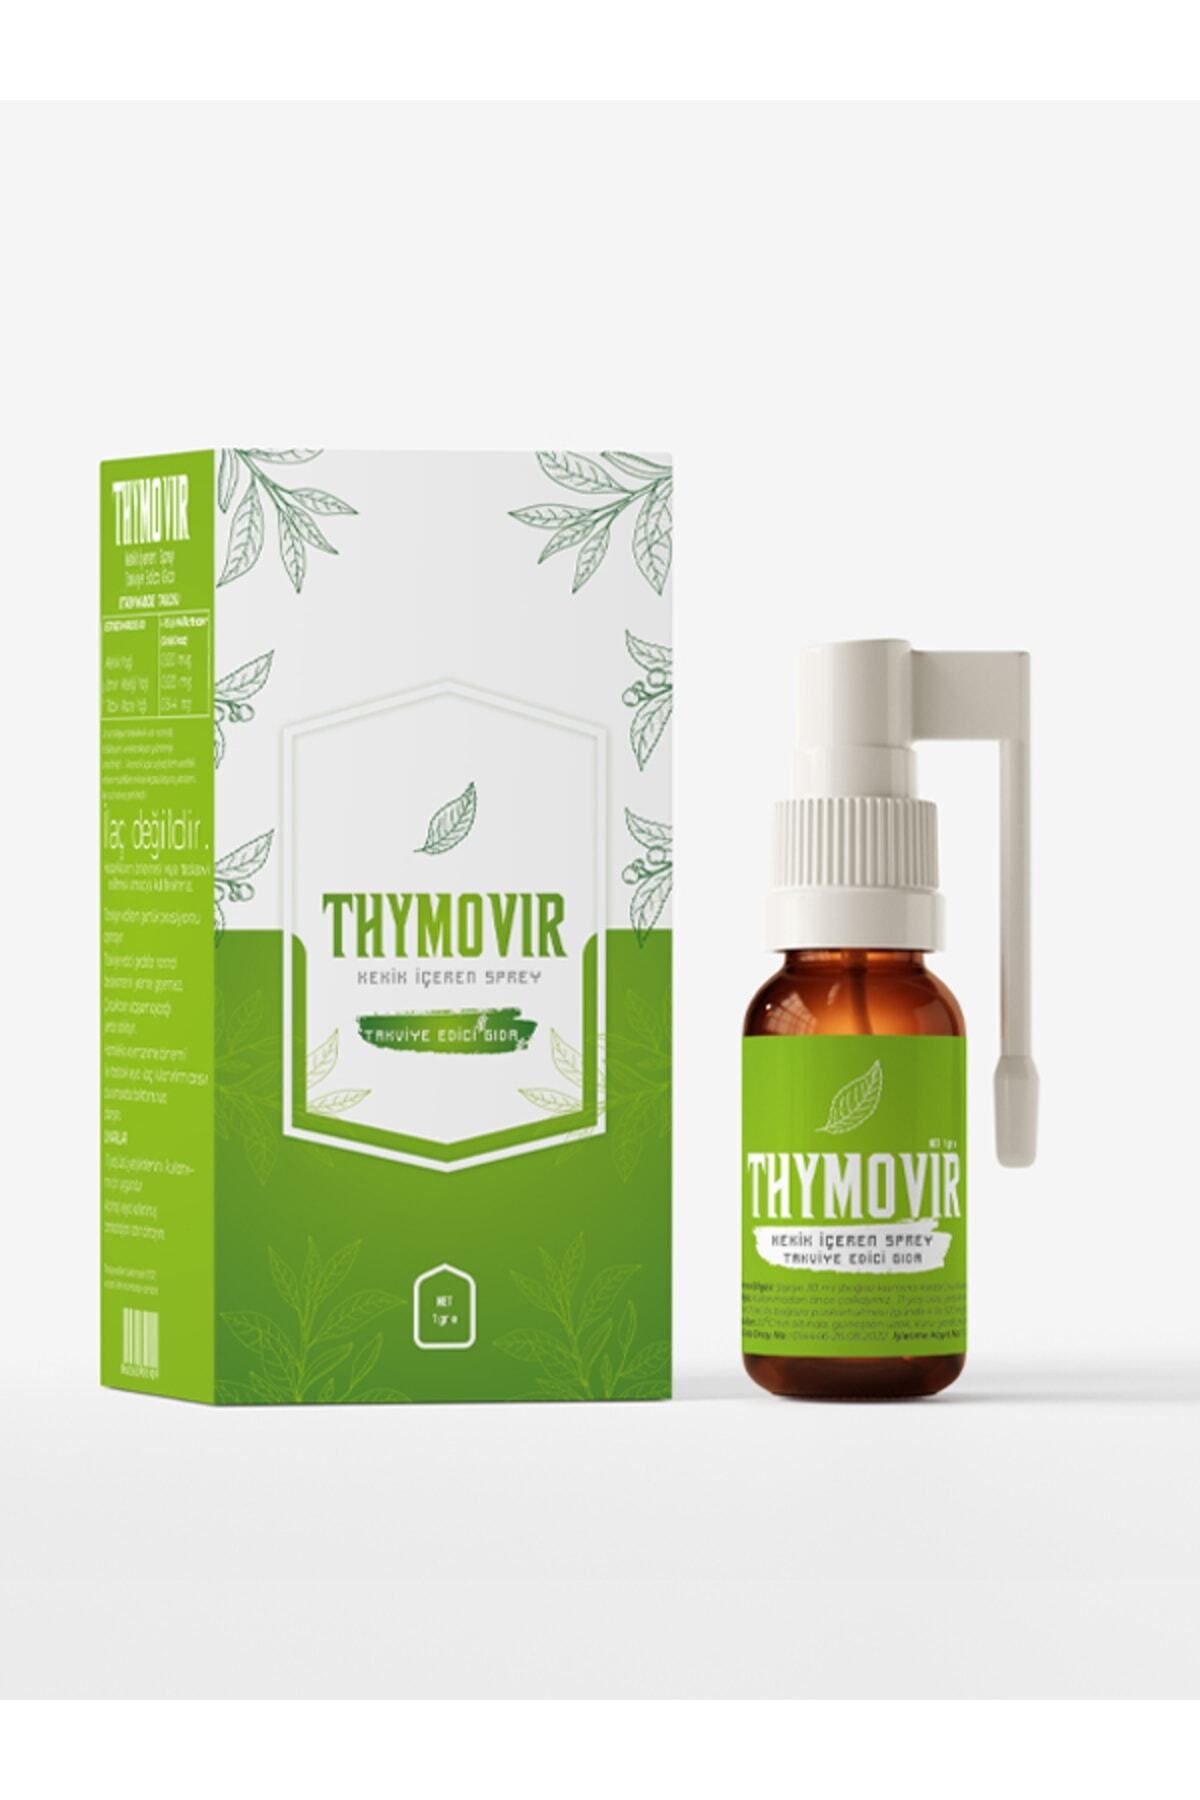 thymovir Doğal Boğaz,agız Spreyi Takviye Edici Gıda Vitamin C Desteği 1 gr Toz/ 30 ml